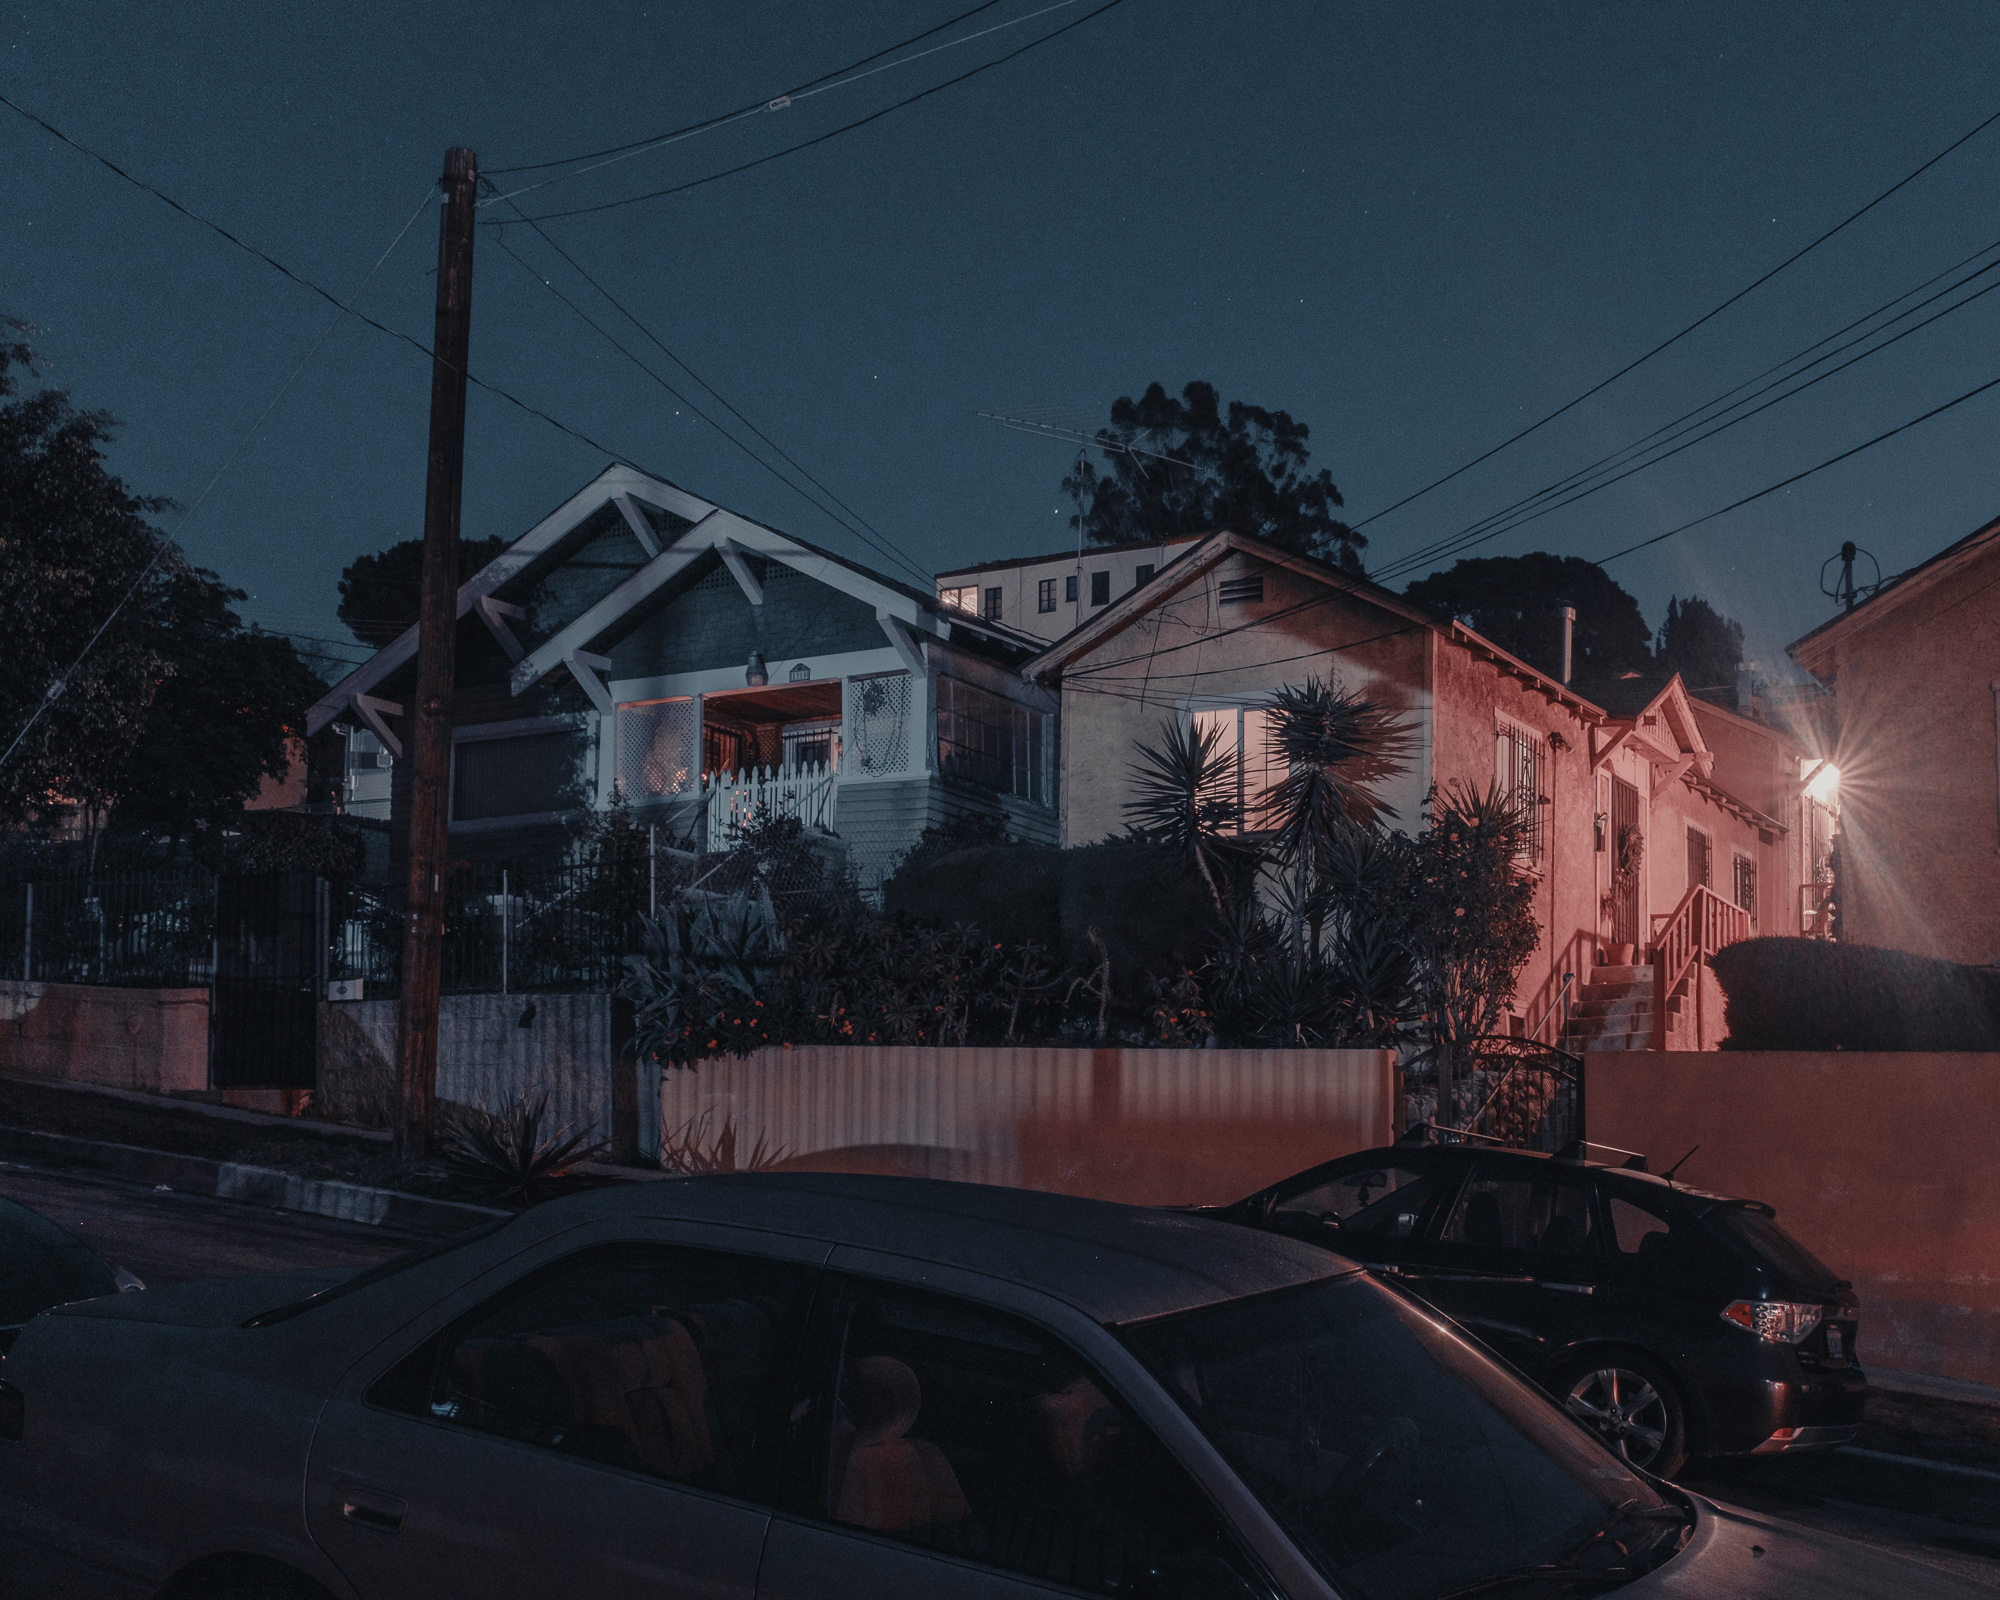 Houses on Douglas St, Los Angeles, 2018